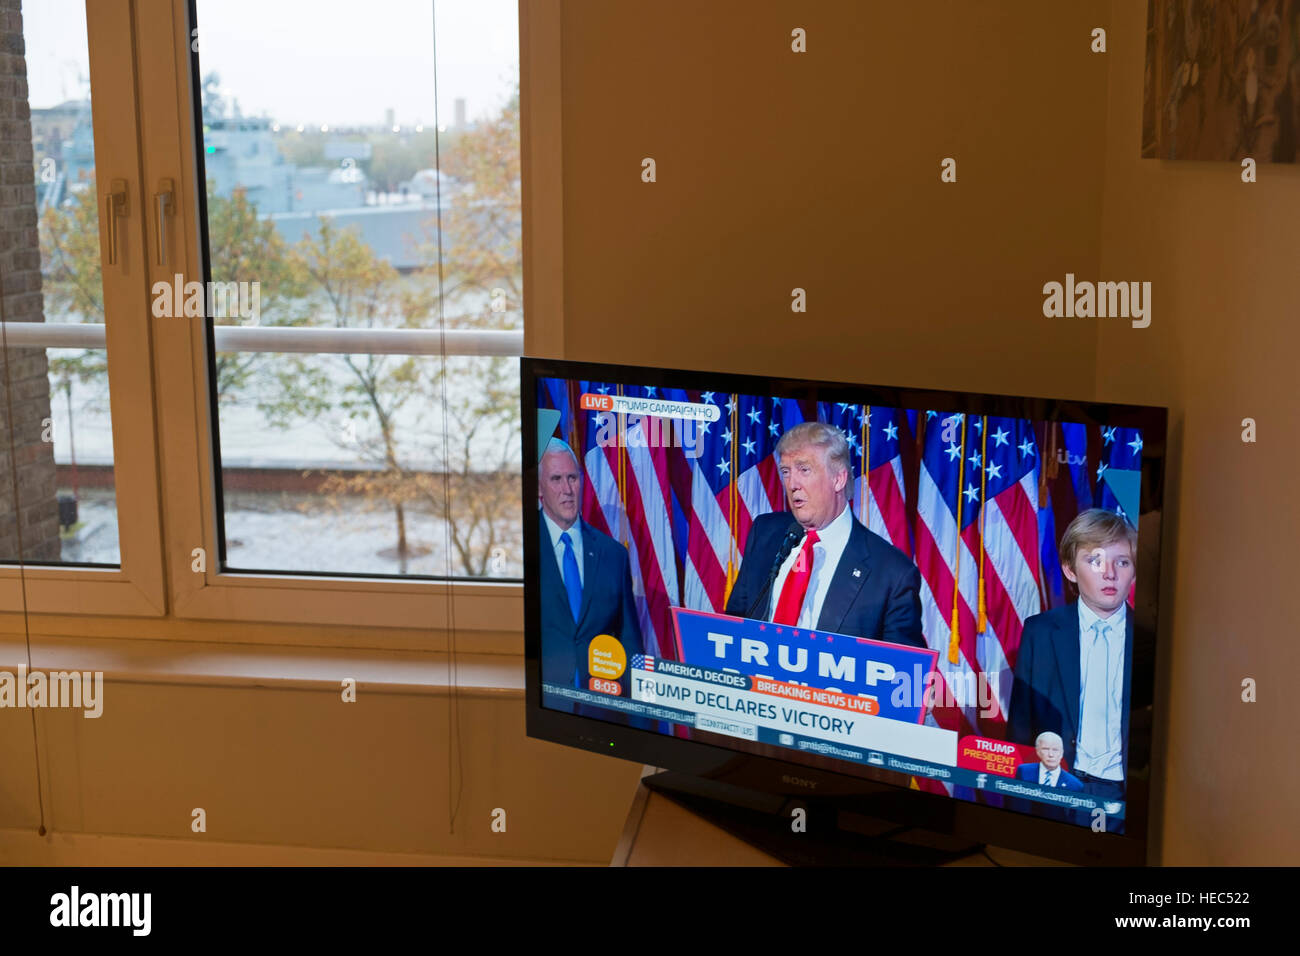 Président élu Donald Trump fait son discours d'acceptation sur le matin après les élections présidentielles américaines en 2016, comme vu sur la BBC d'une maison à Londres, Angleterre, Royaume-Uni. Banque D'Images